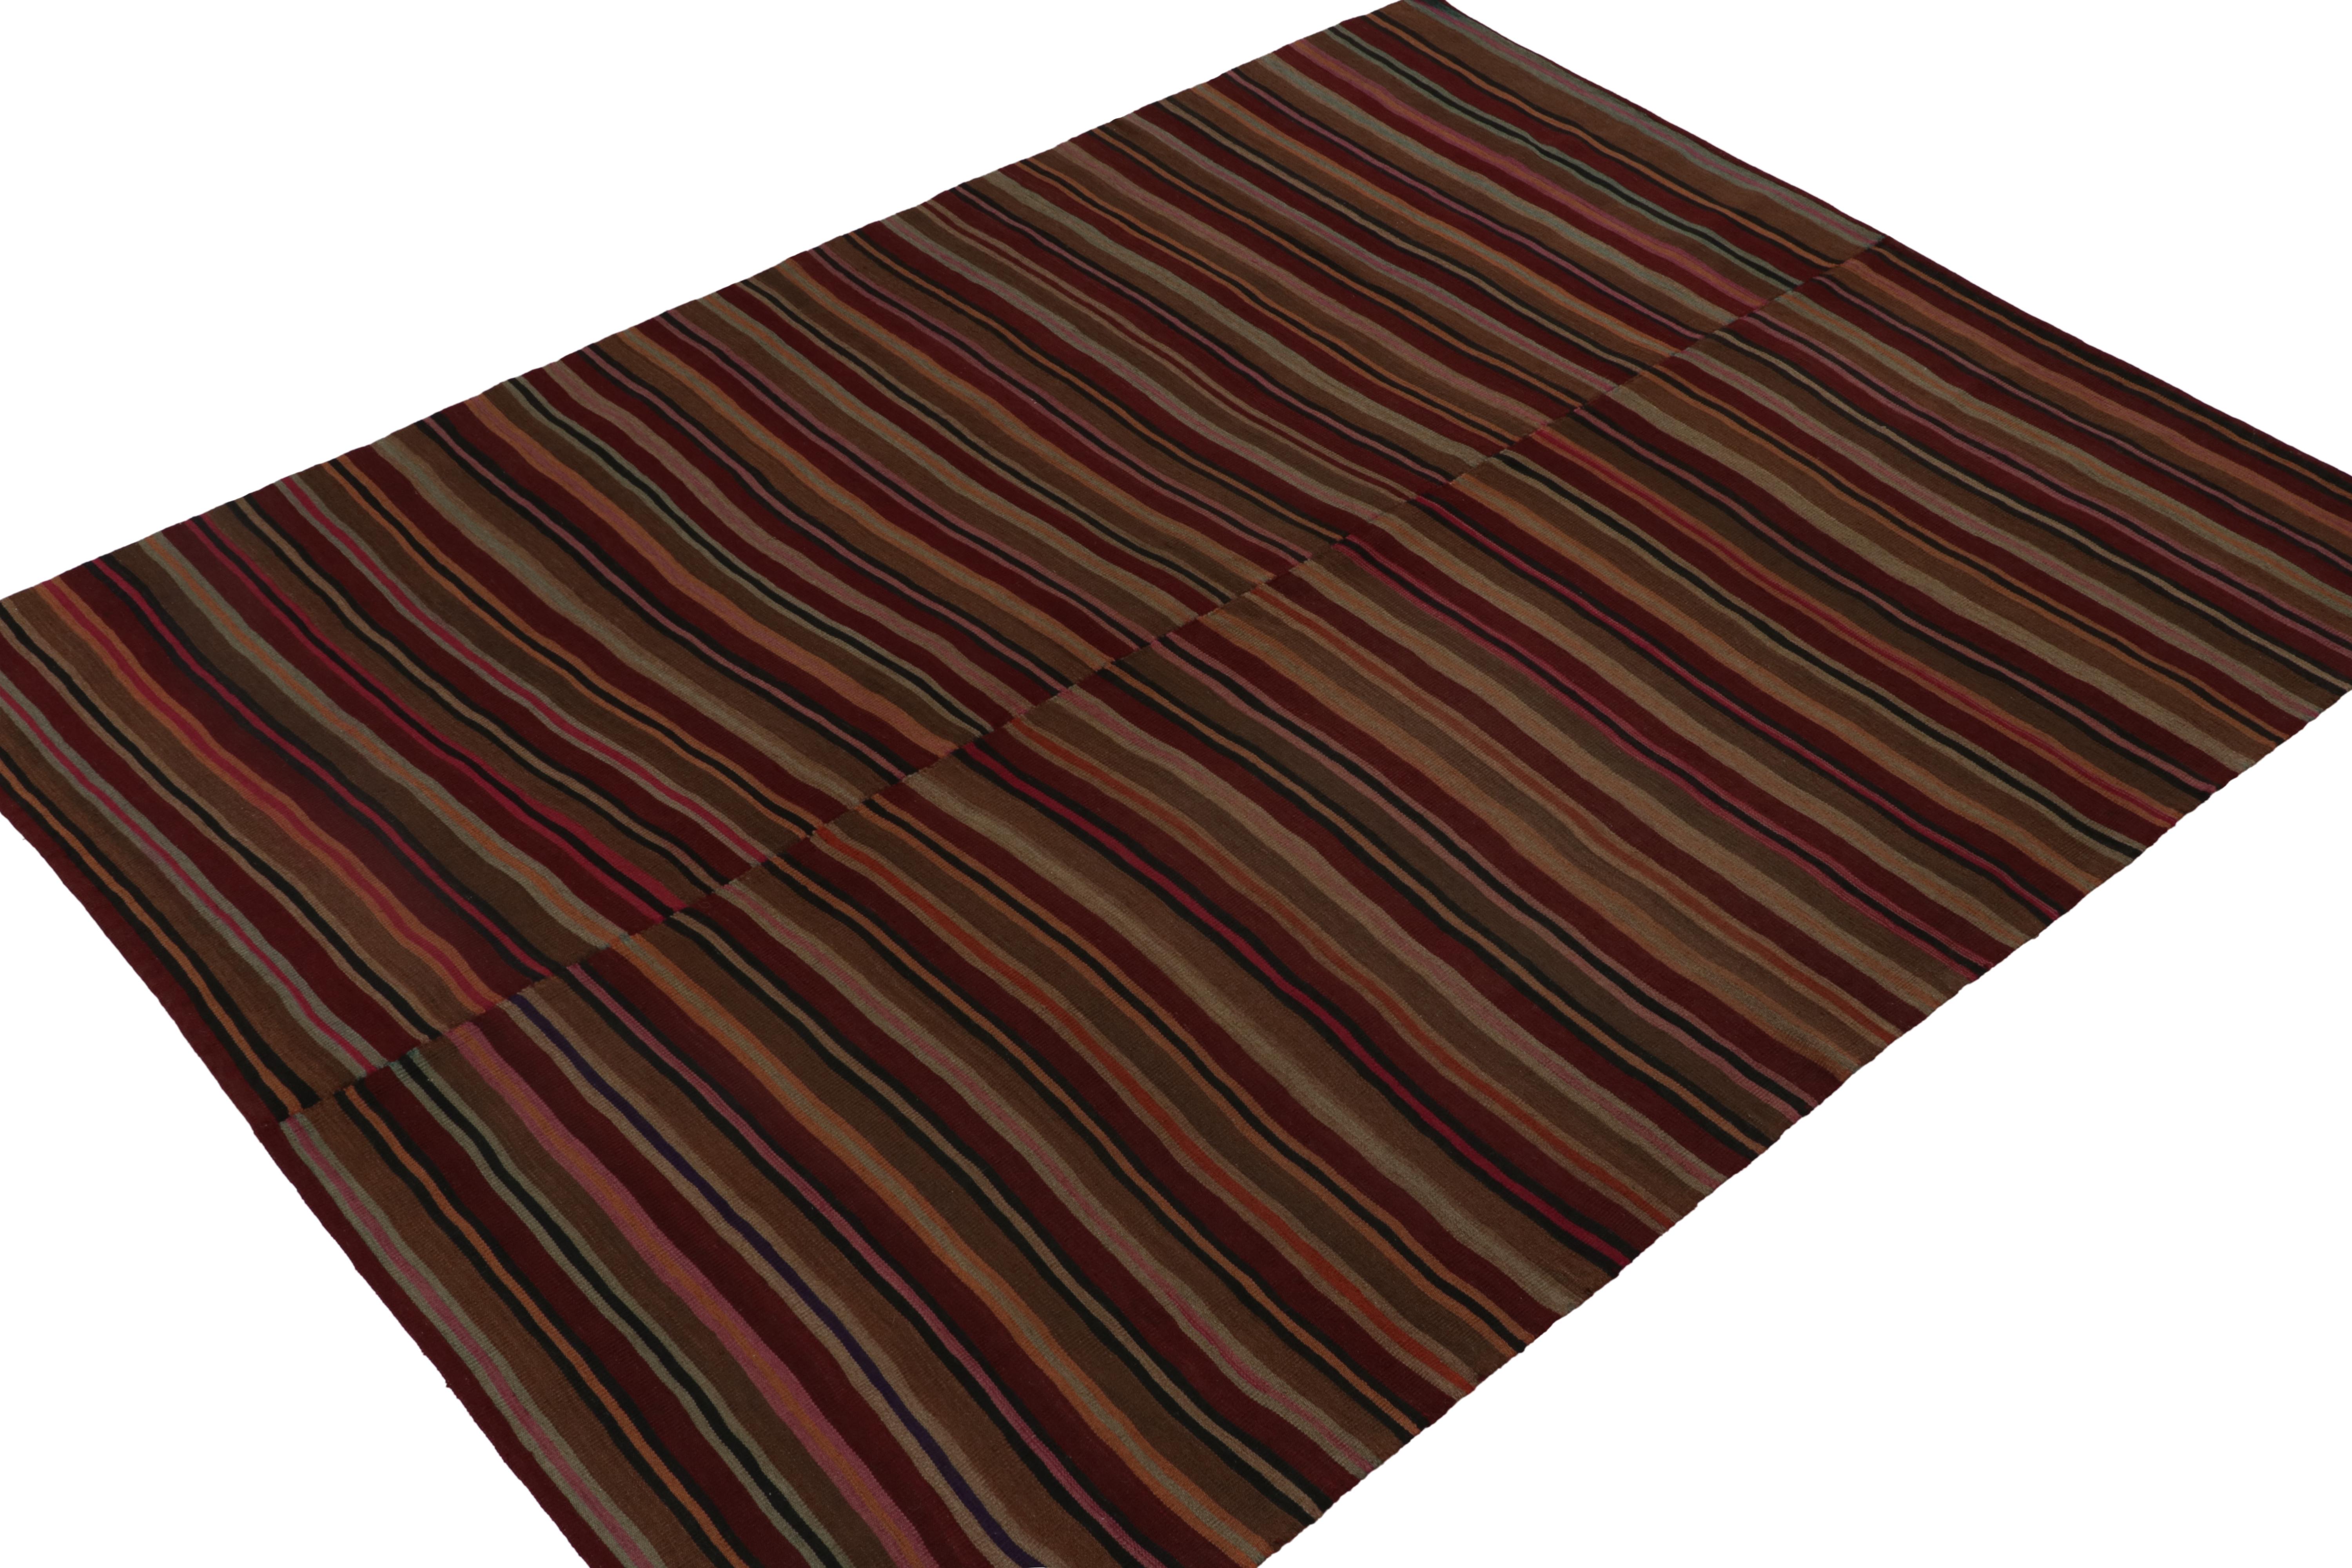 Ce Rug & Kilim persan vintage 8x10 est un tapis tribal tissé sur panneau unique pour son époque, tissé à la main en laine vers 1950-1960.

Plus loin dans le Design :

Issu d'une longue tradition de styles, ce tapis bénéficie d'une rare grande taille